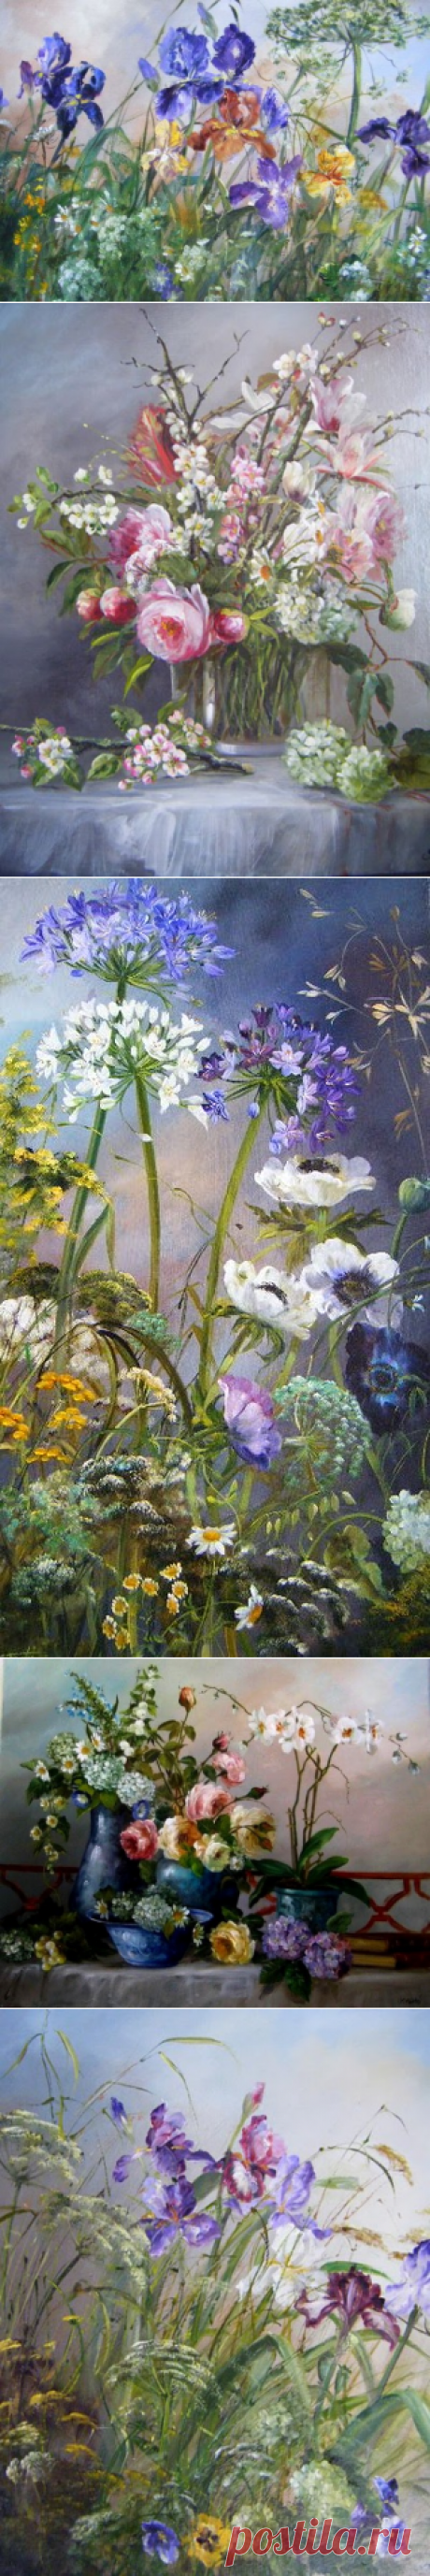 Цветы ХУДОЖНИЦЫ SYLVIE FORTIN стоят тяжелыми букетами в вазах или порхают, как бабочки, на живом просторе.